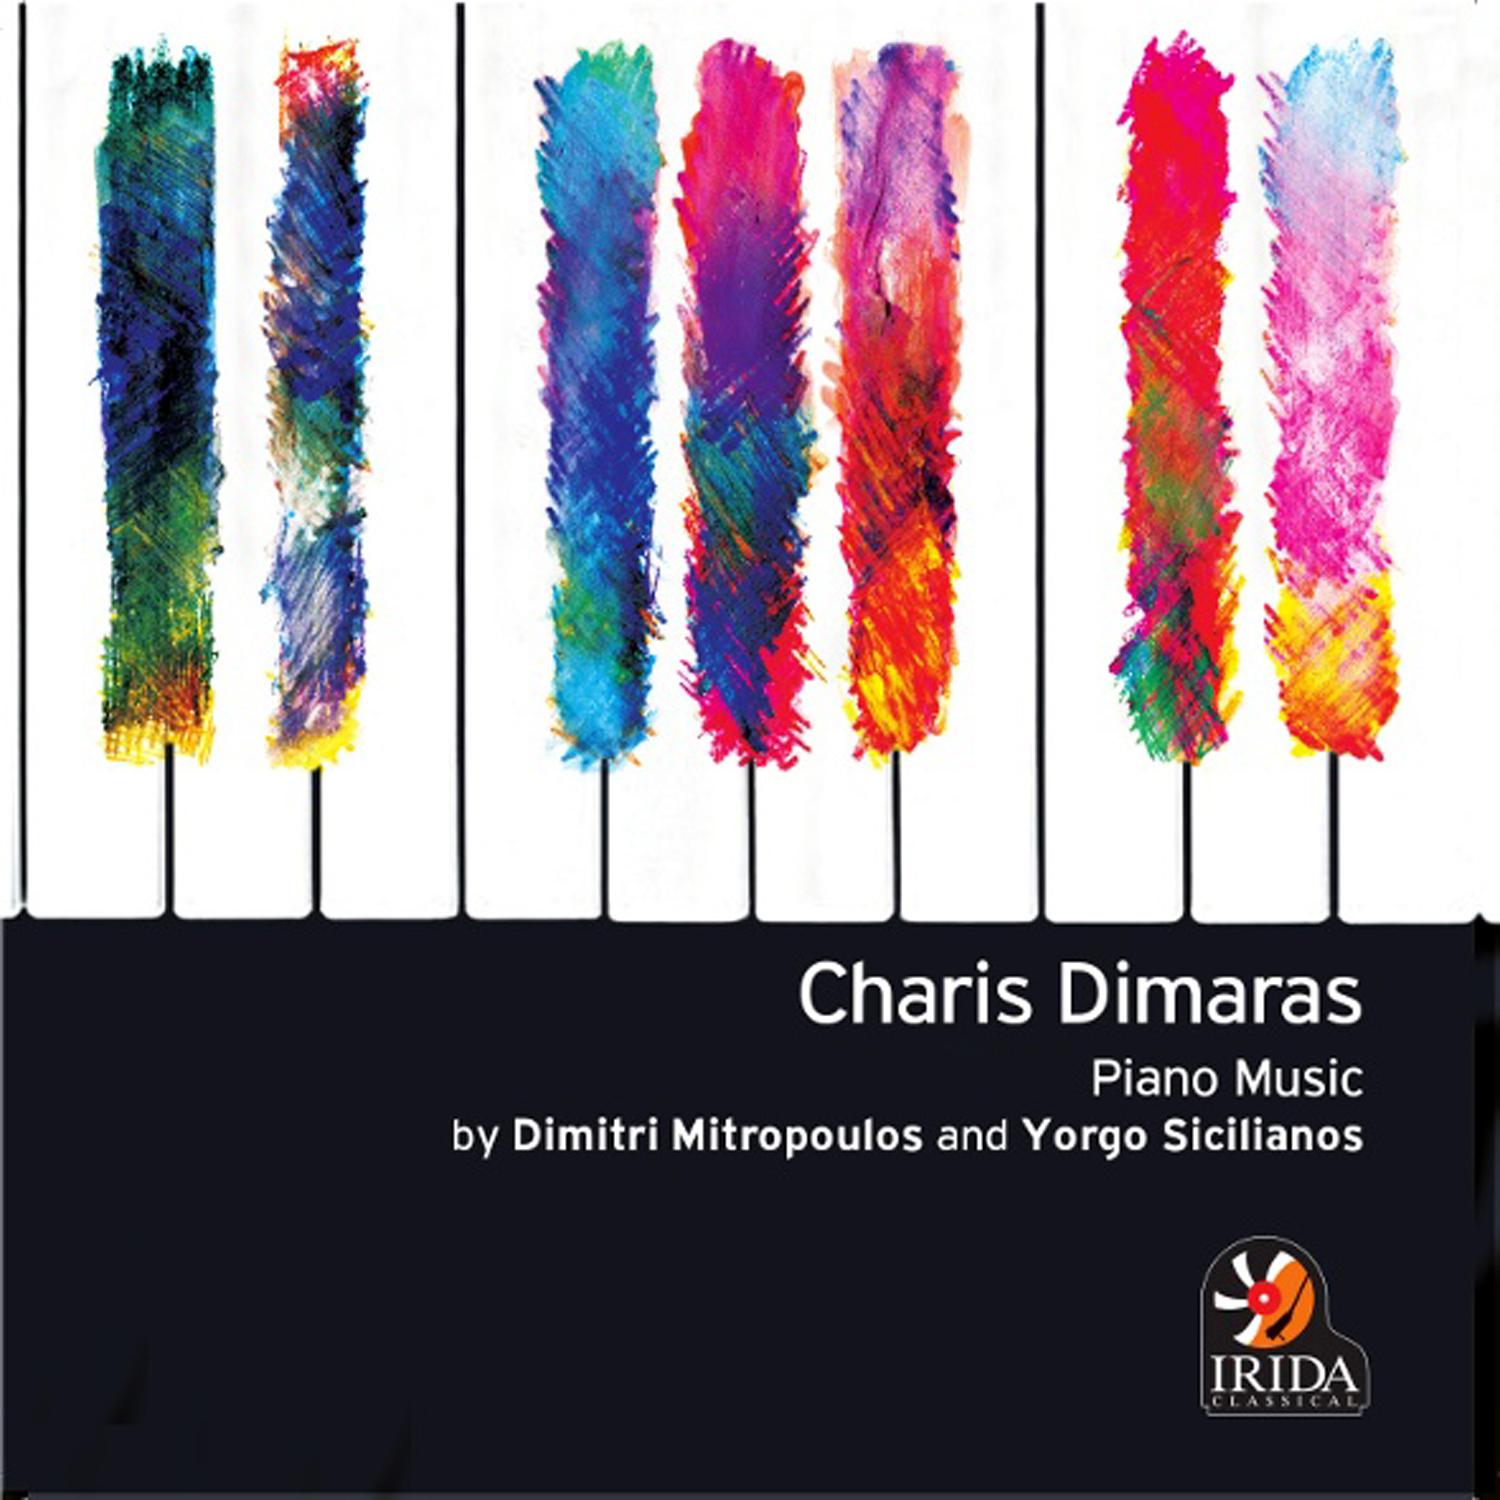 Piano Music by Dimitri Mitropoulos and Yorgo Sicilianos